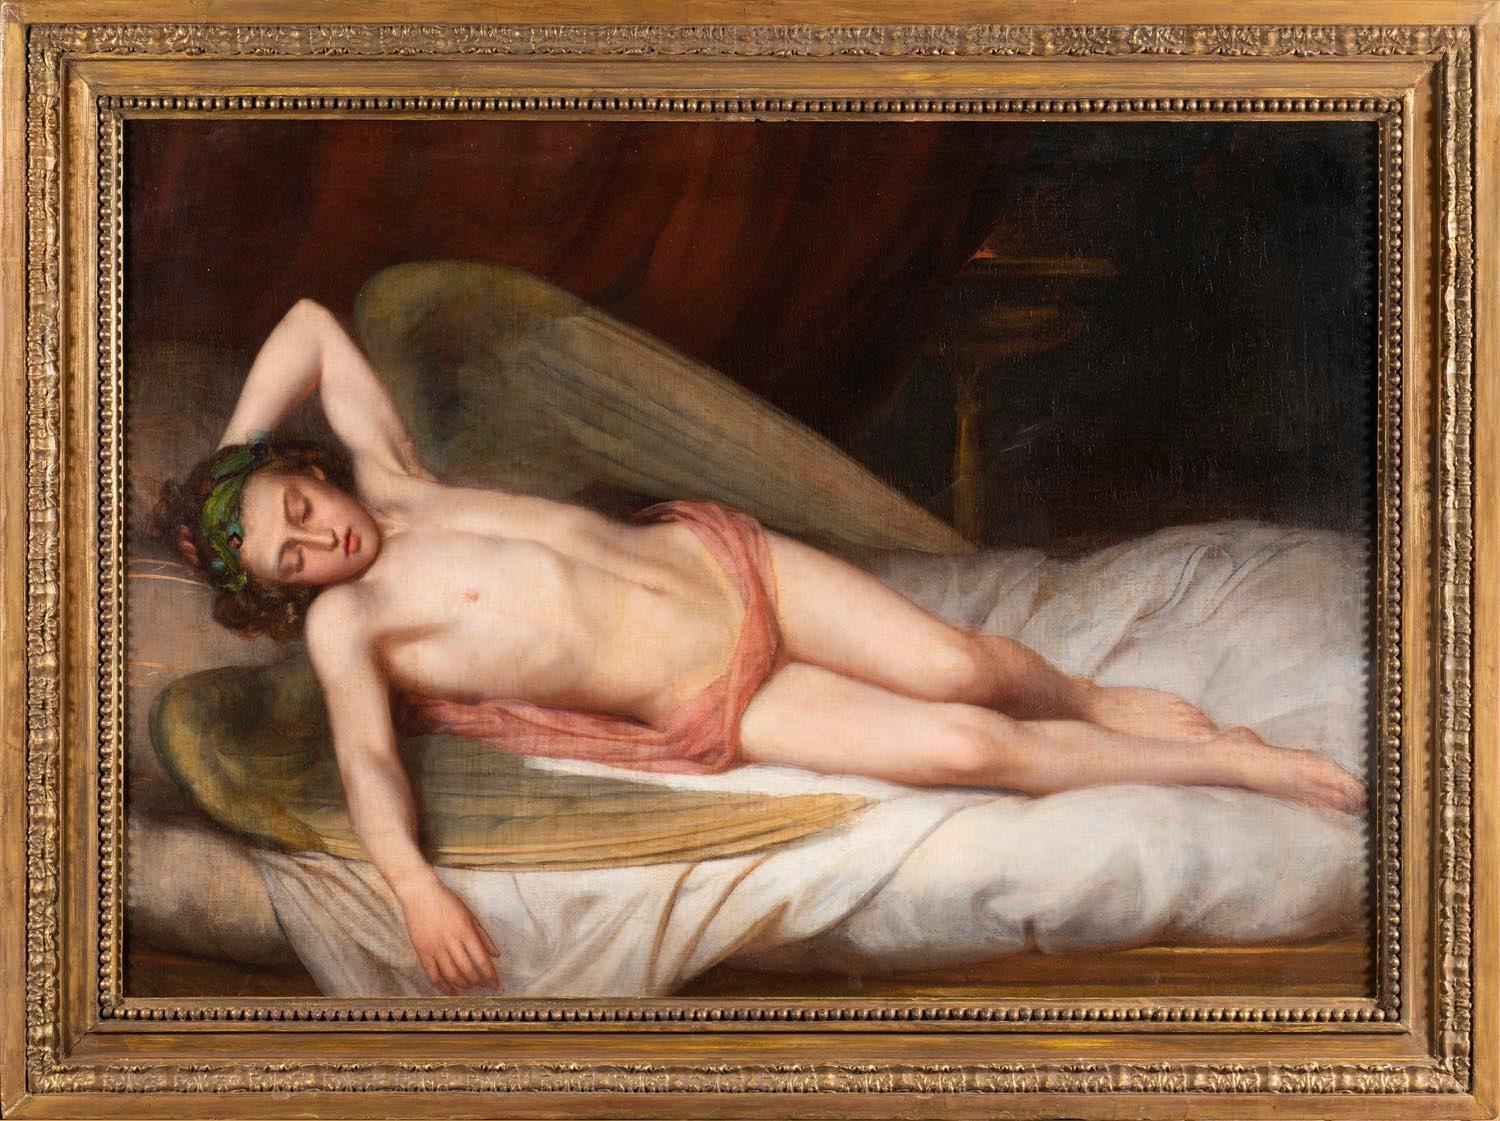 Sleeping Angel, Englische Schule, Liegende Figur, 19. Jahrhundert, Öl